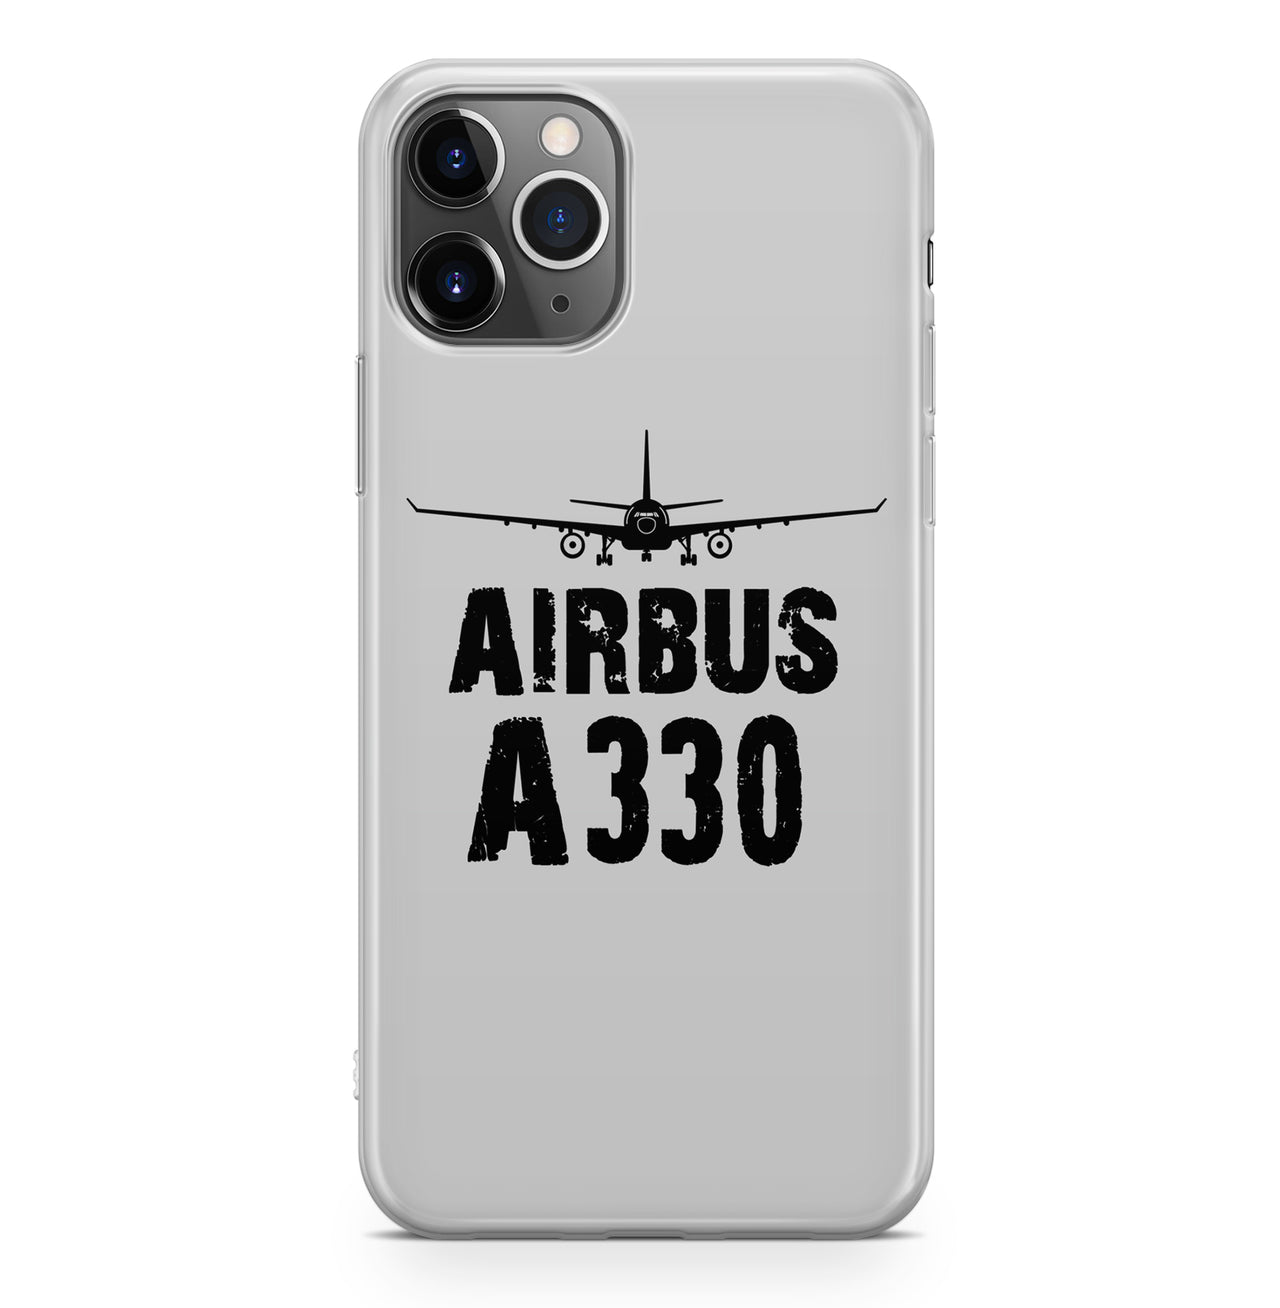 Airbus A330 & Plane Designed iPhone Cases